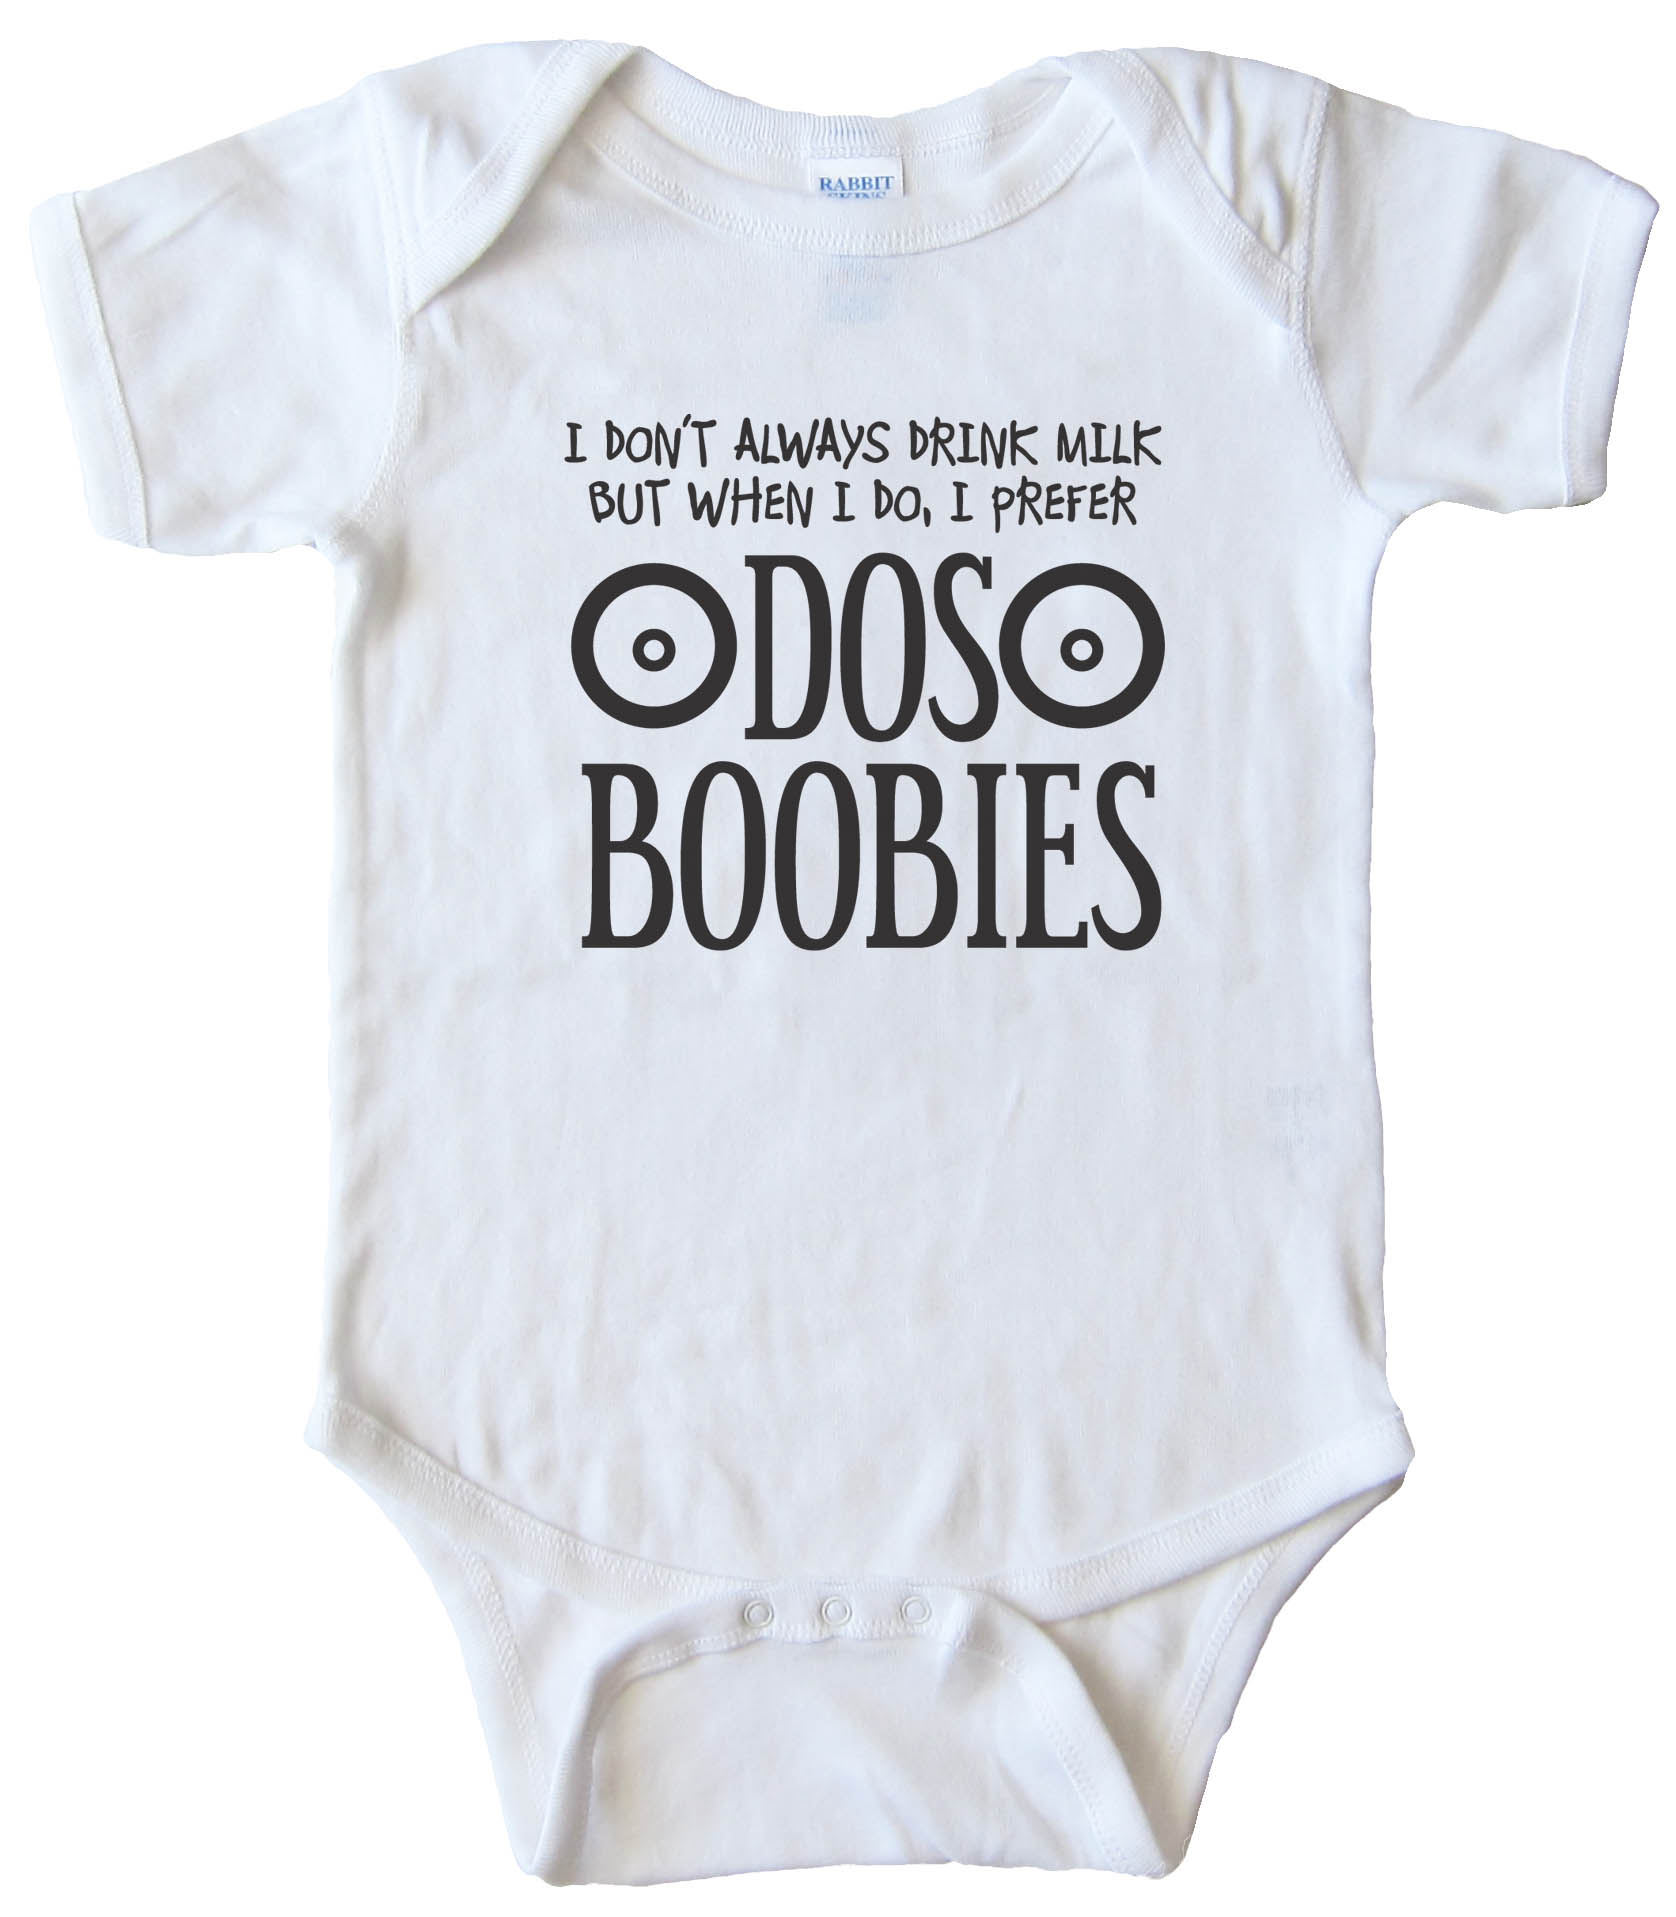 Dos Boobies - Baby Bodysuit